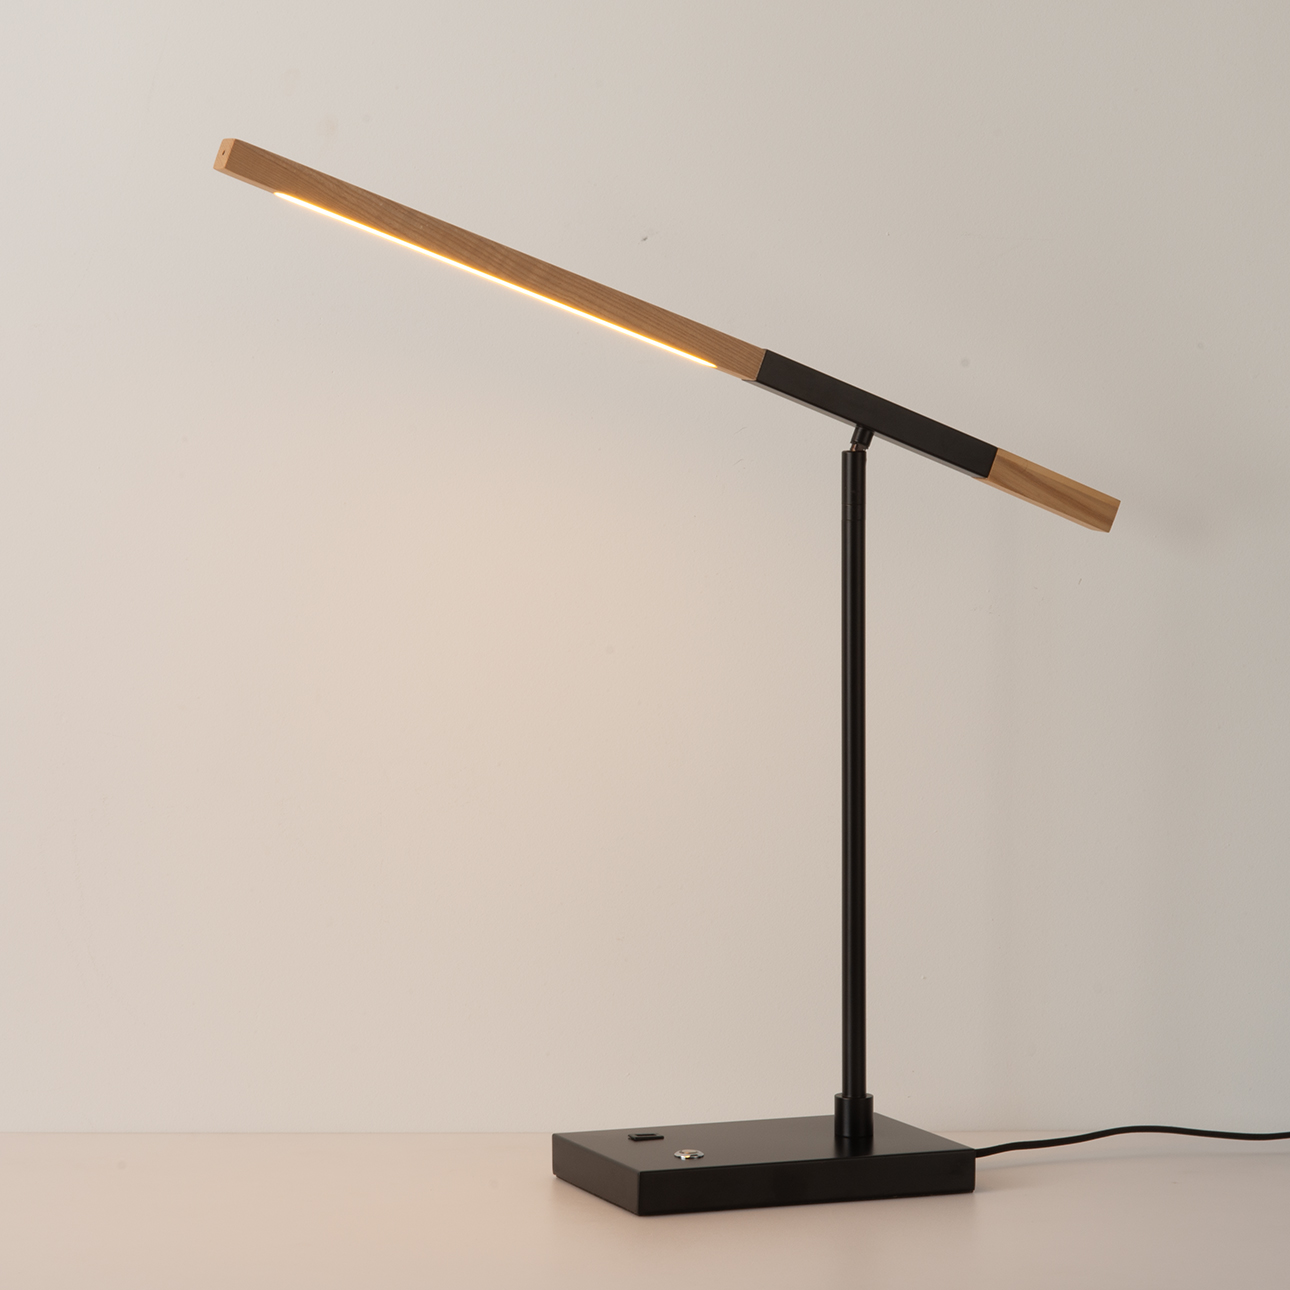 Port LED Table Lamp – Matte Black, Natural Ash Wood Finish